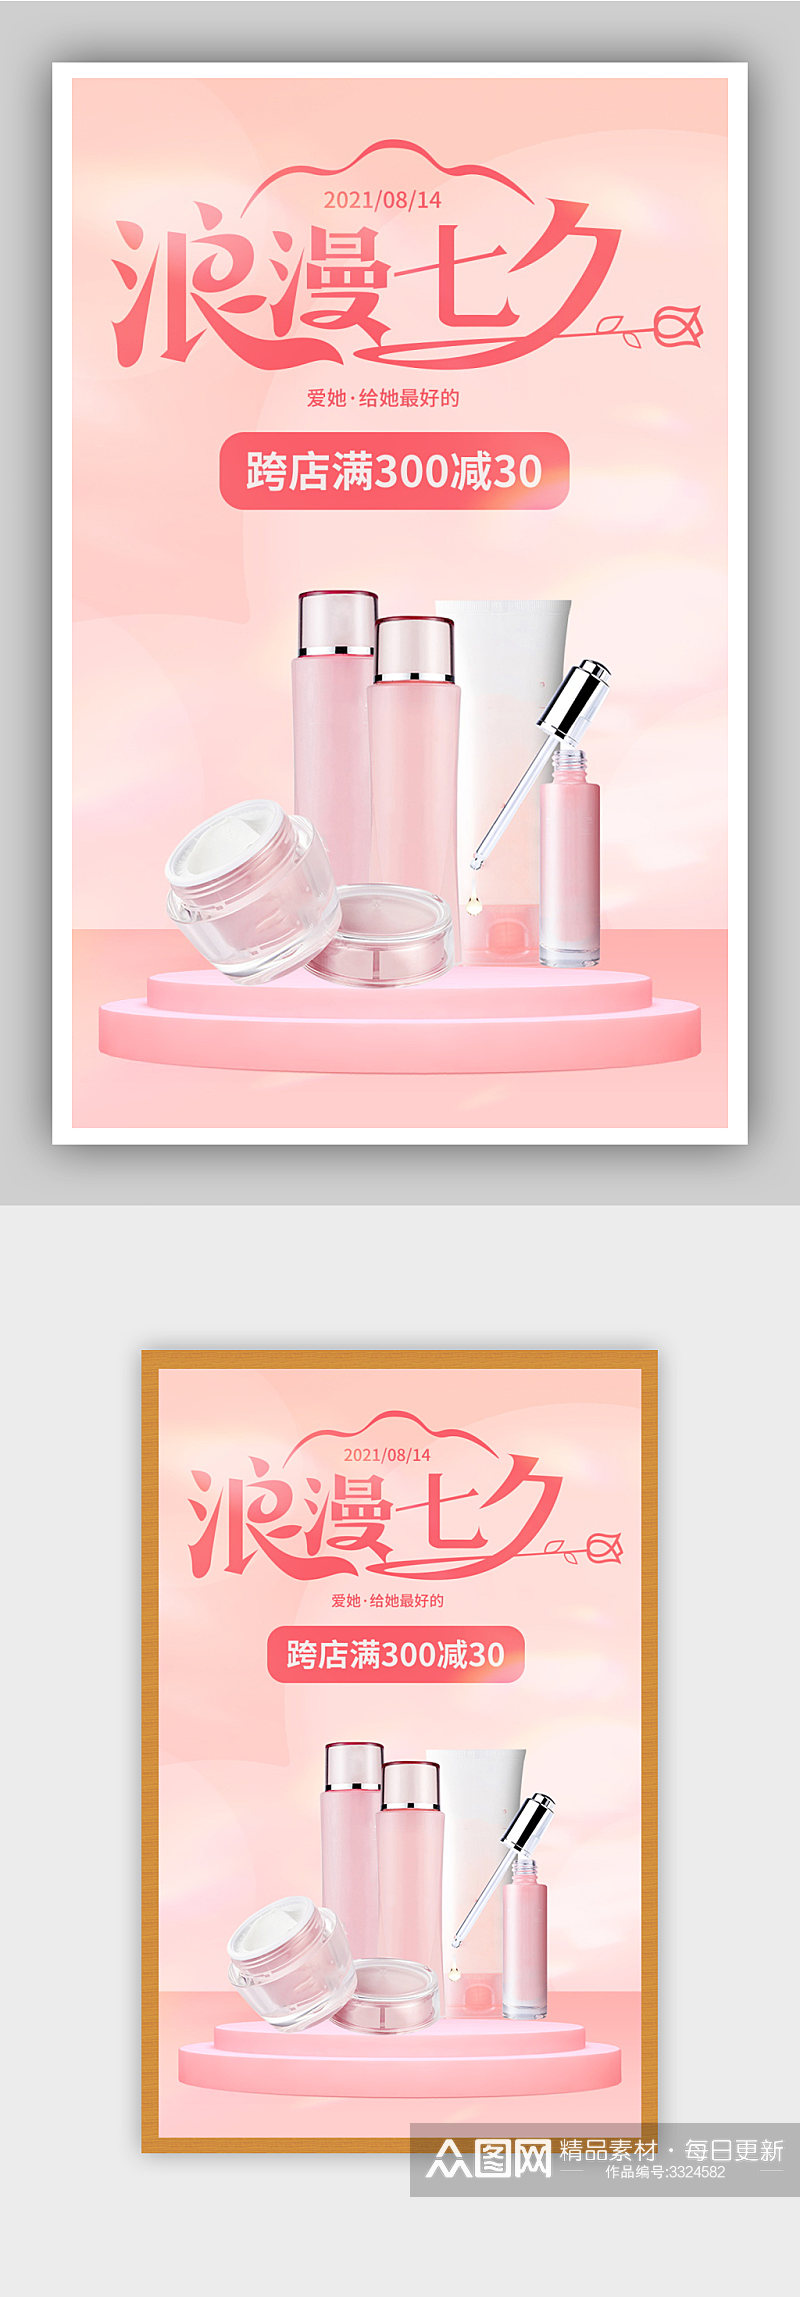 七夕护肤购物美妆购物粉红色简约活动海报素材